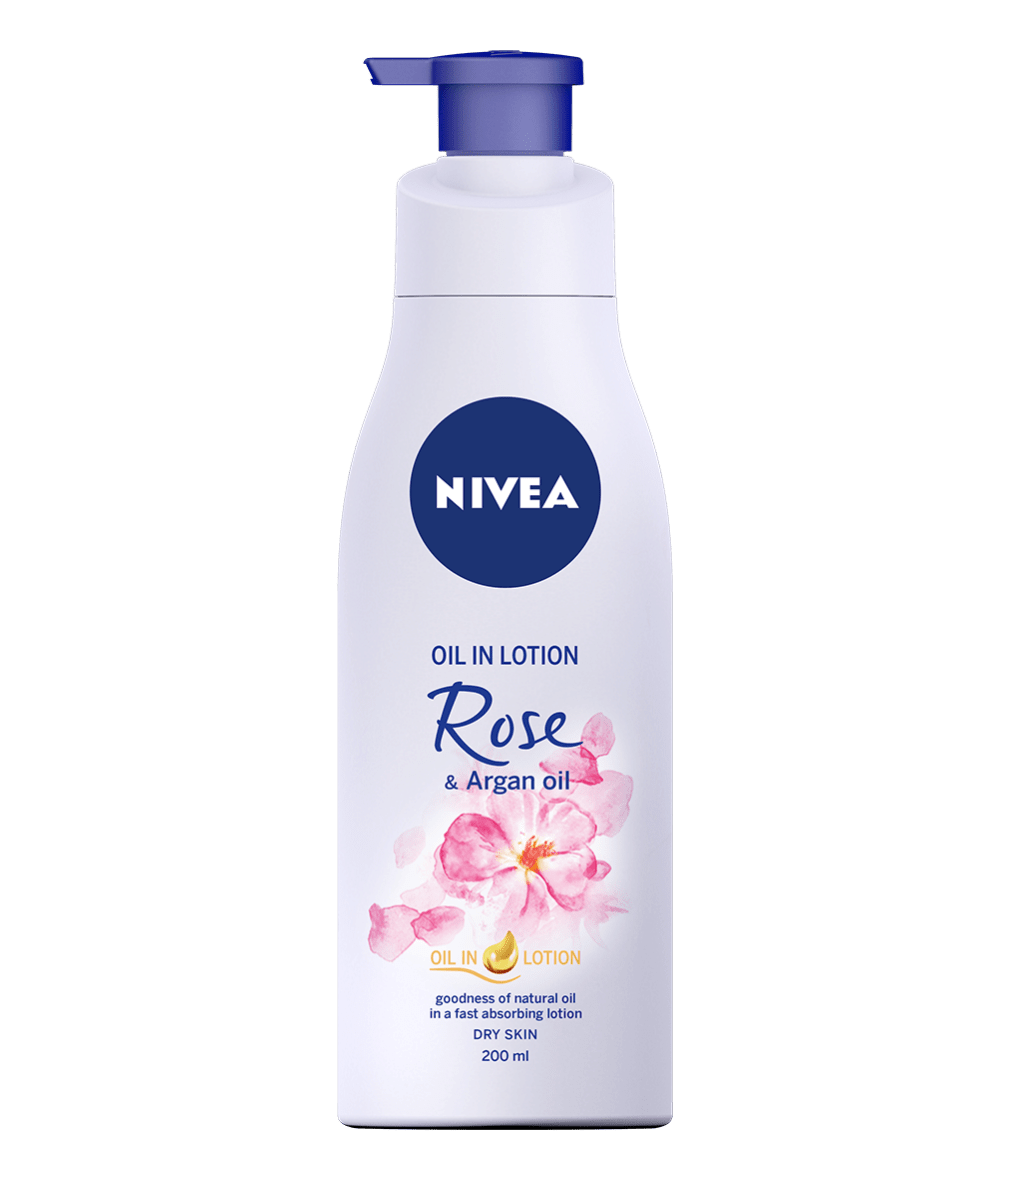 NIVEA Oil in Lotion Rose & Argan